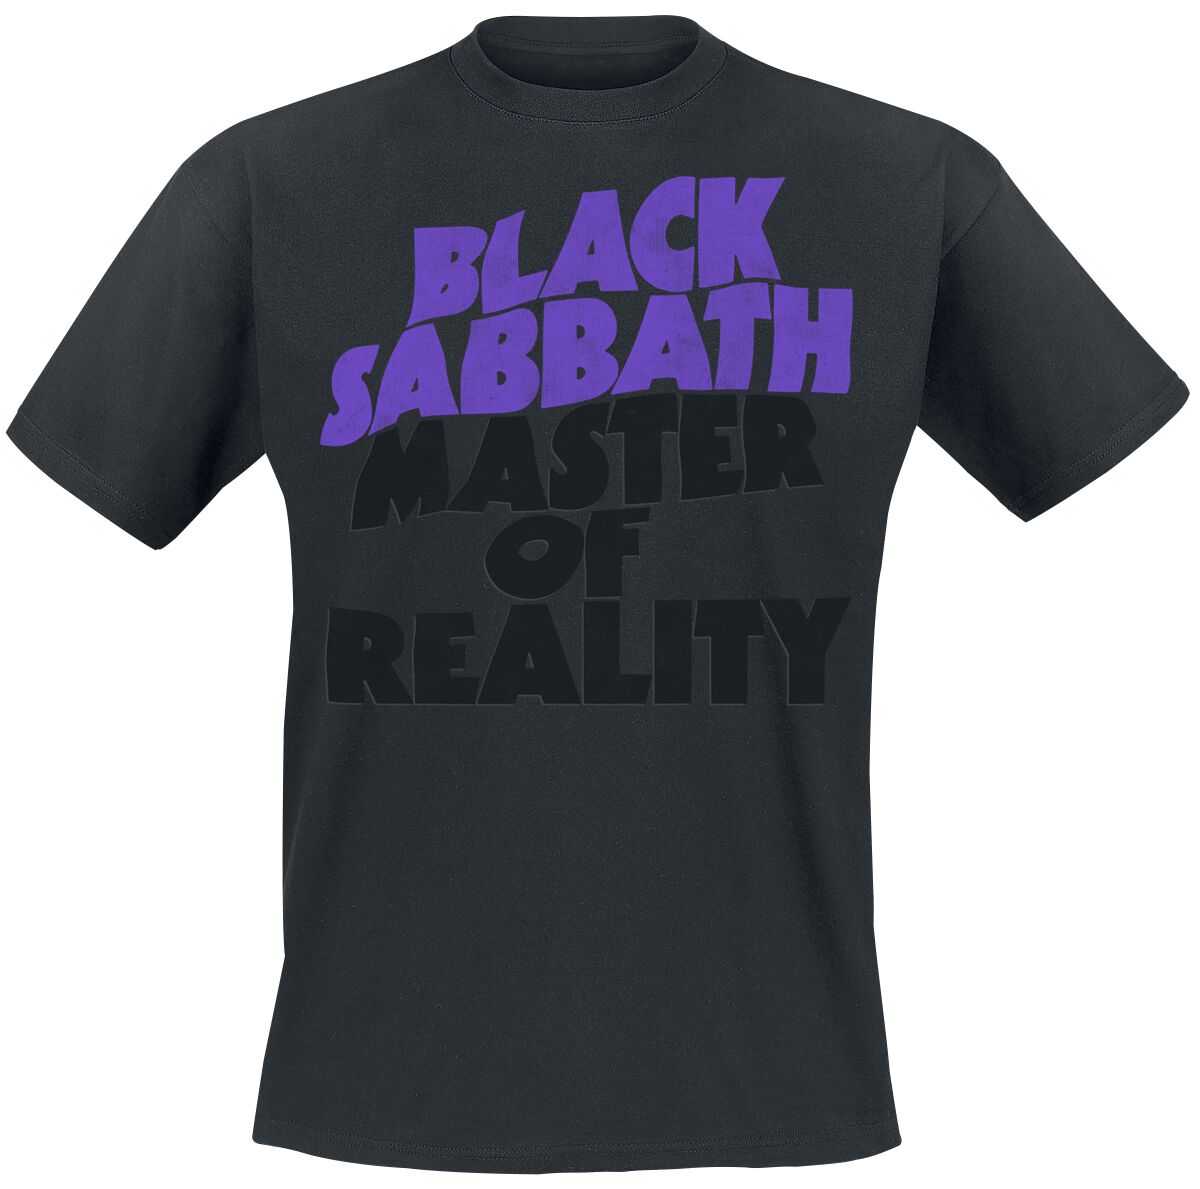 Black Sabbath T-Shirt - Master Of Reality Tracklist - M bis XXL - für Männer - Größe XXL - schwarz  - Lizenziertes Merchandise!